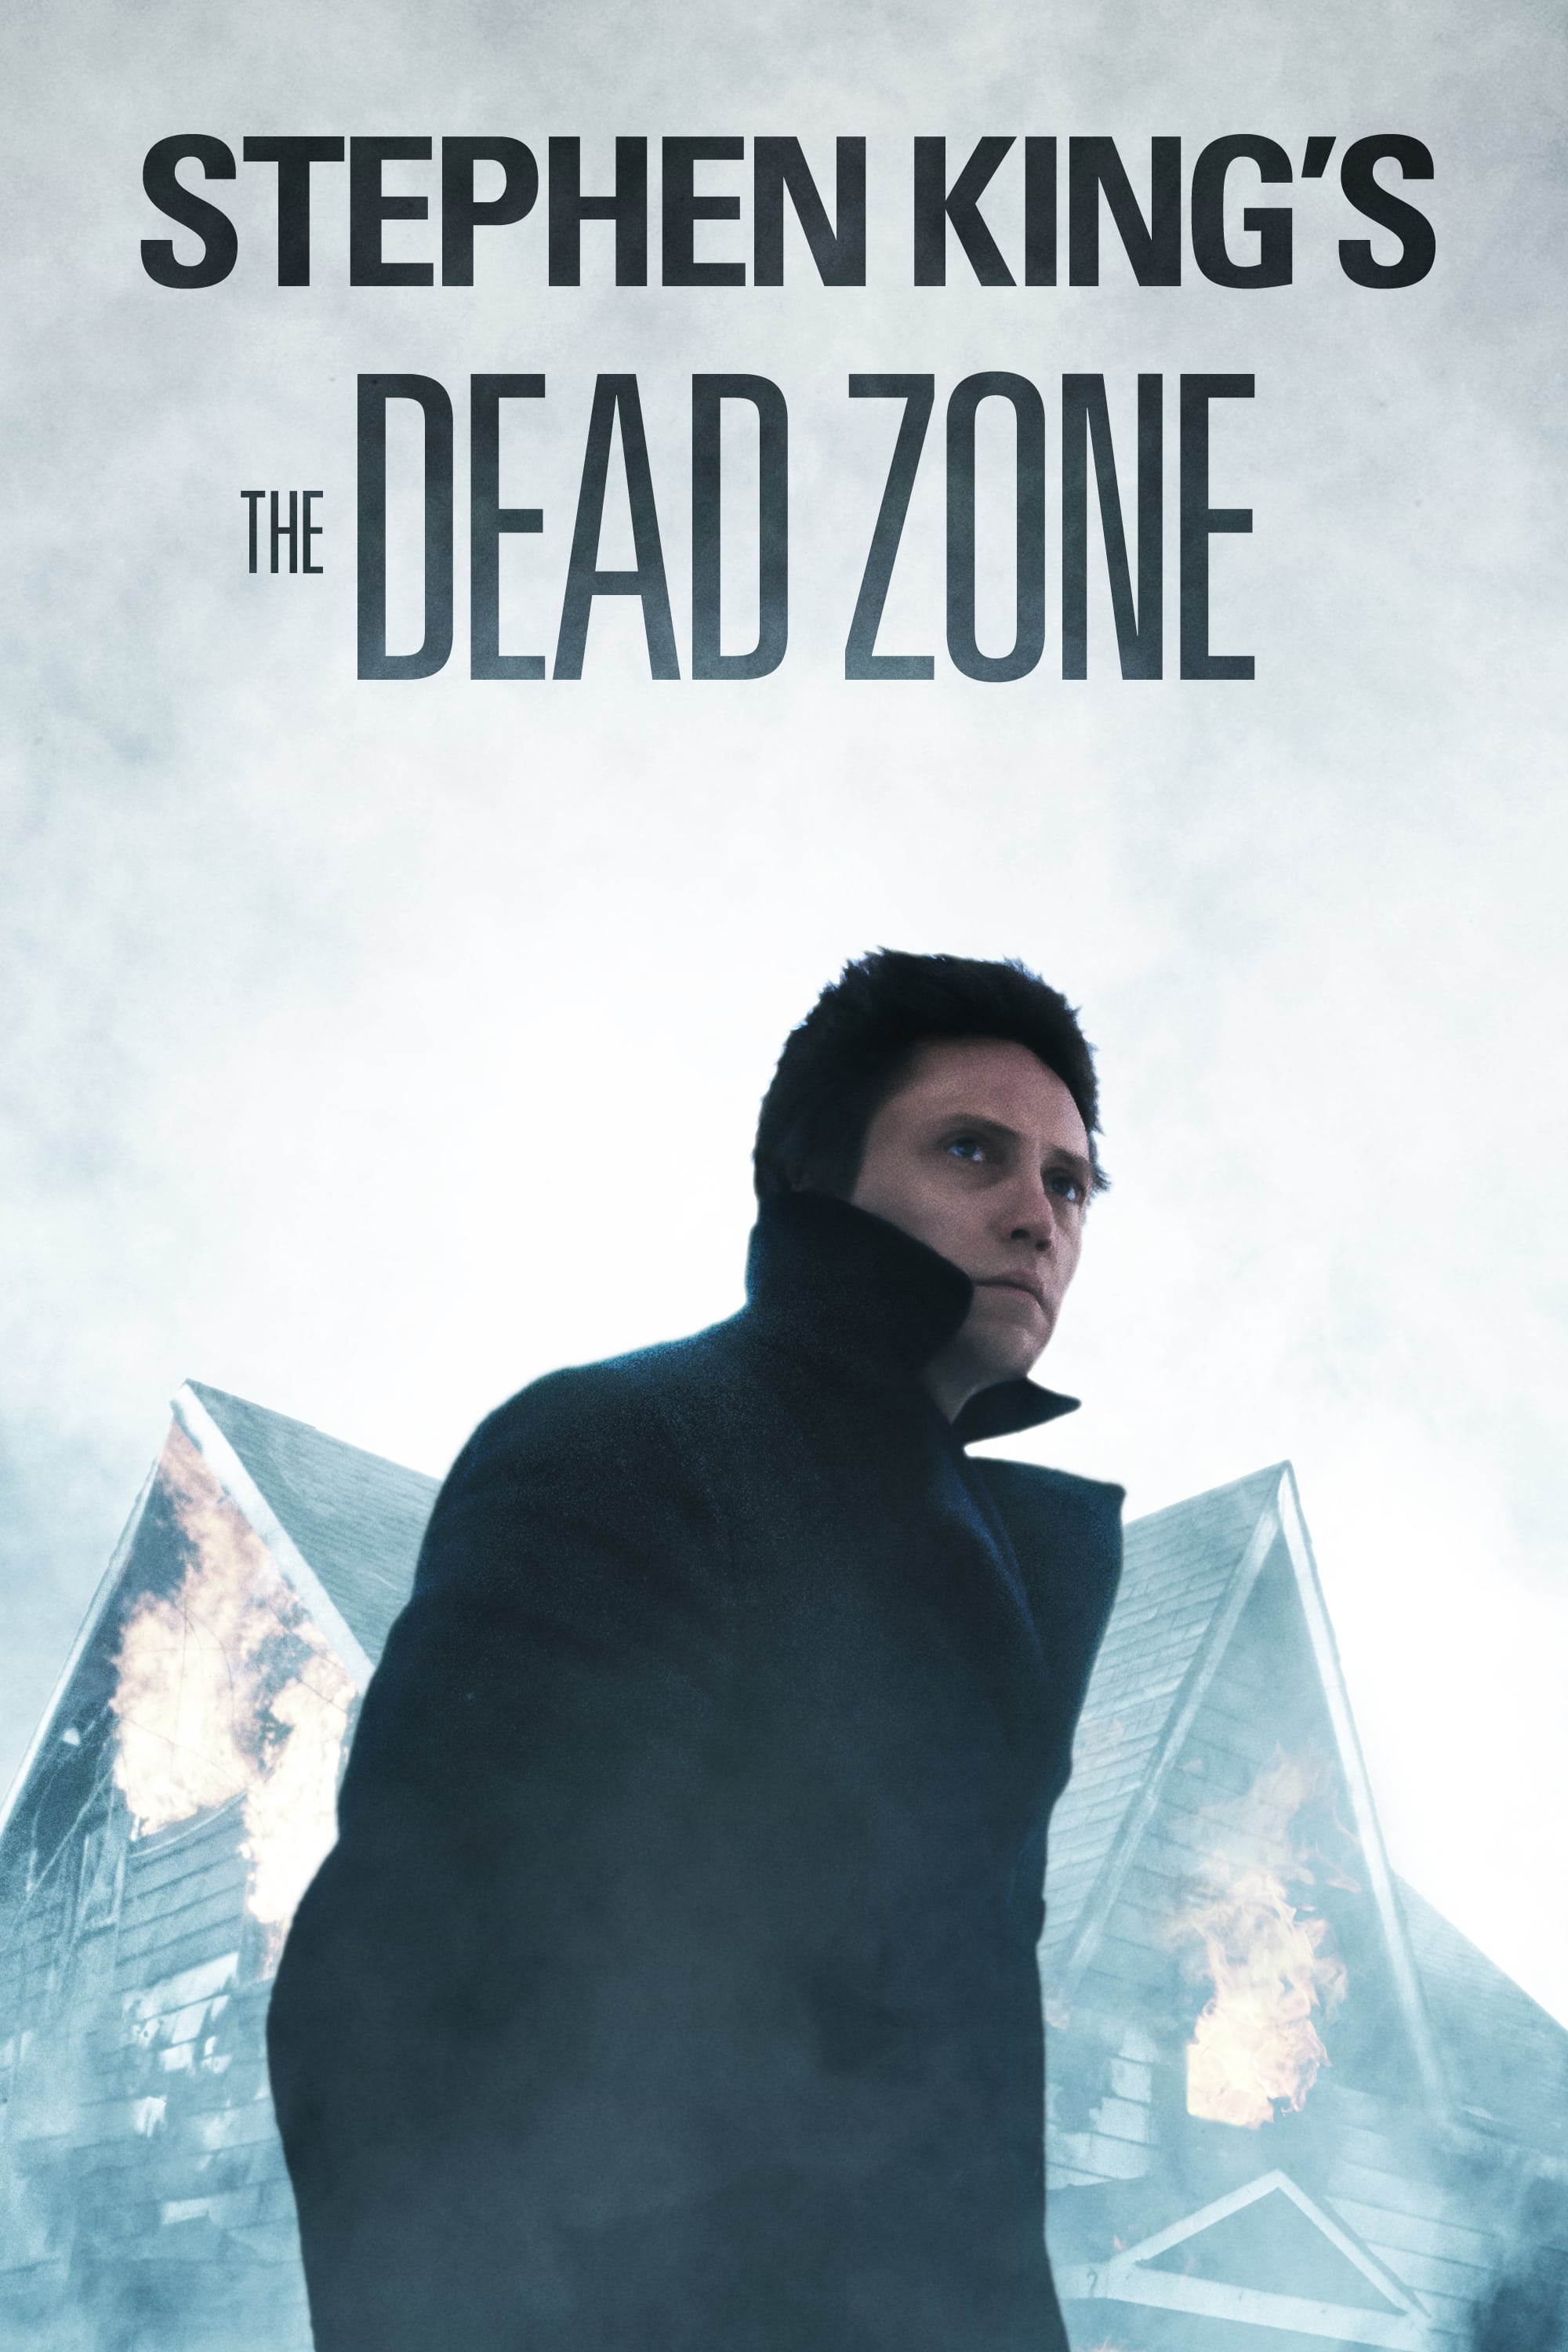 Poster Dead Zone